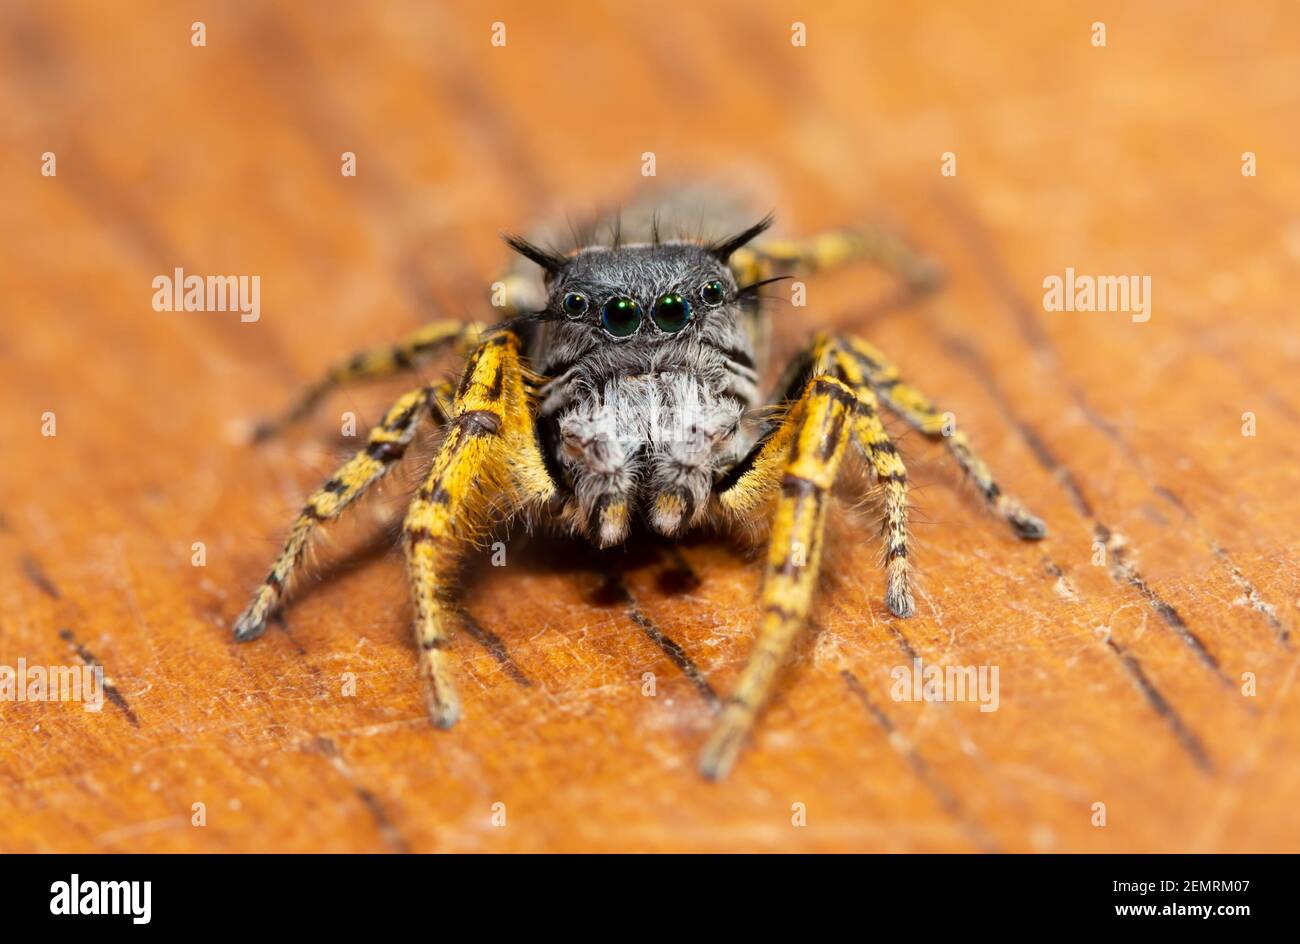 Belle, colorée, mâle Phidippus mystaceus sauteuse araignée regardant le spectateur Banque D'Images